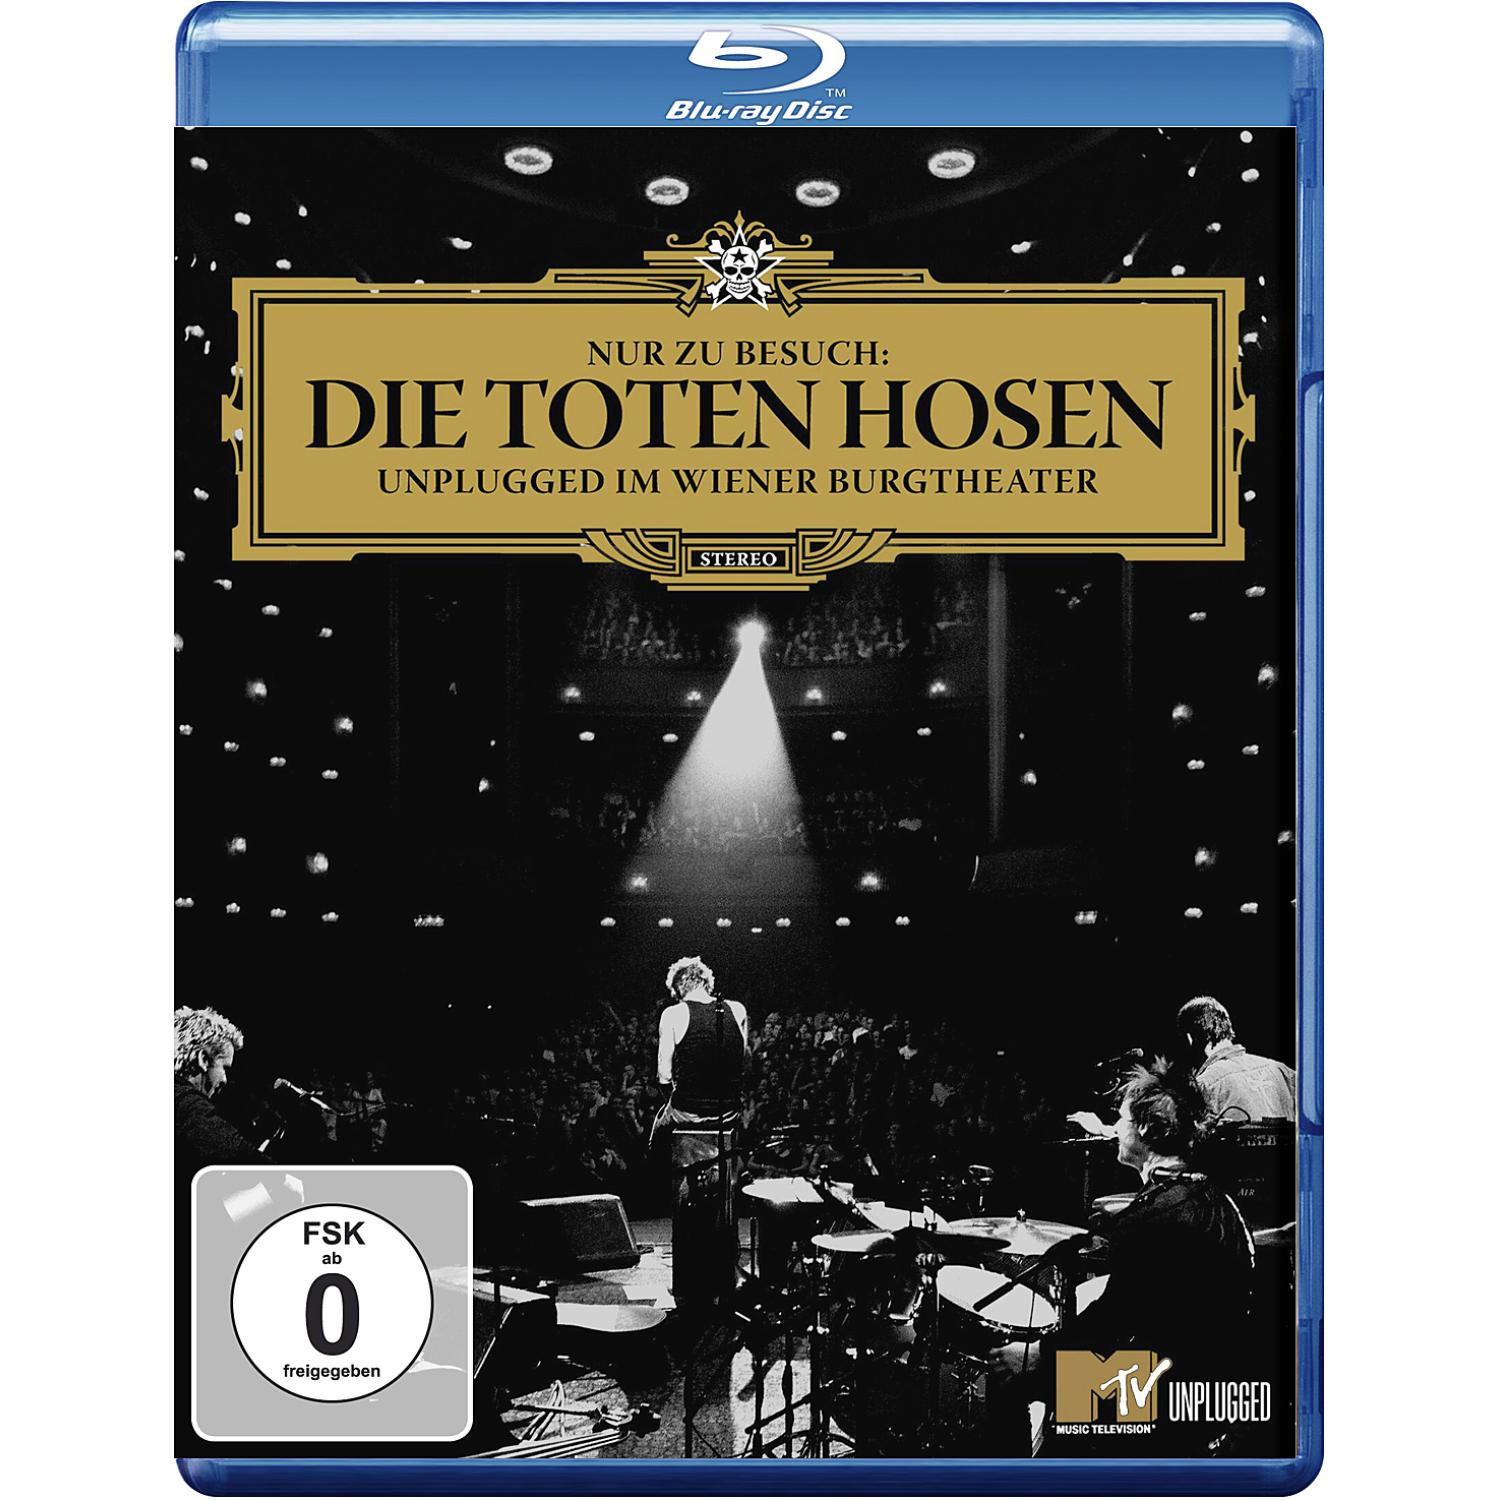 WIENER IM - BURGTEATHER - Toten (Blu-ray) Die Hosen